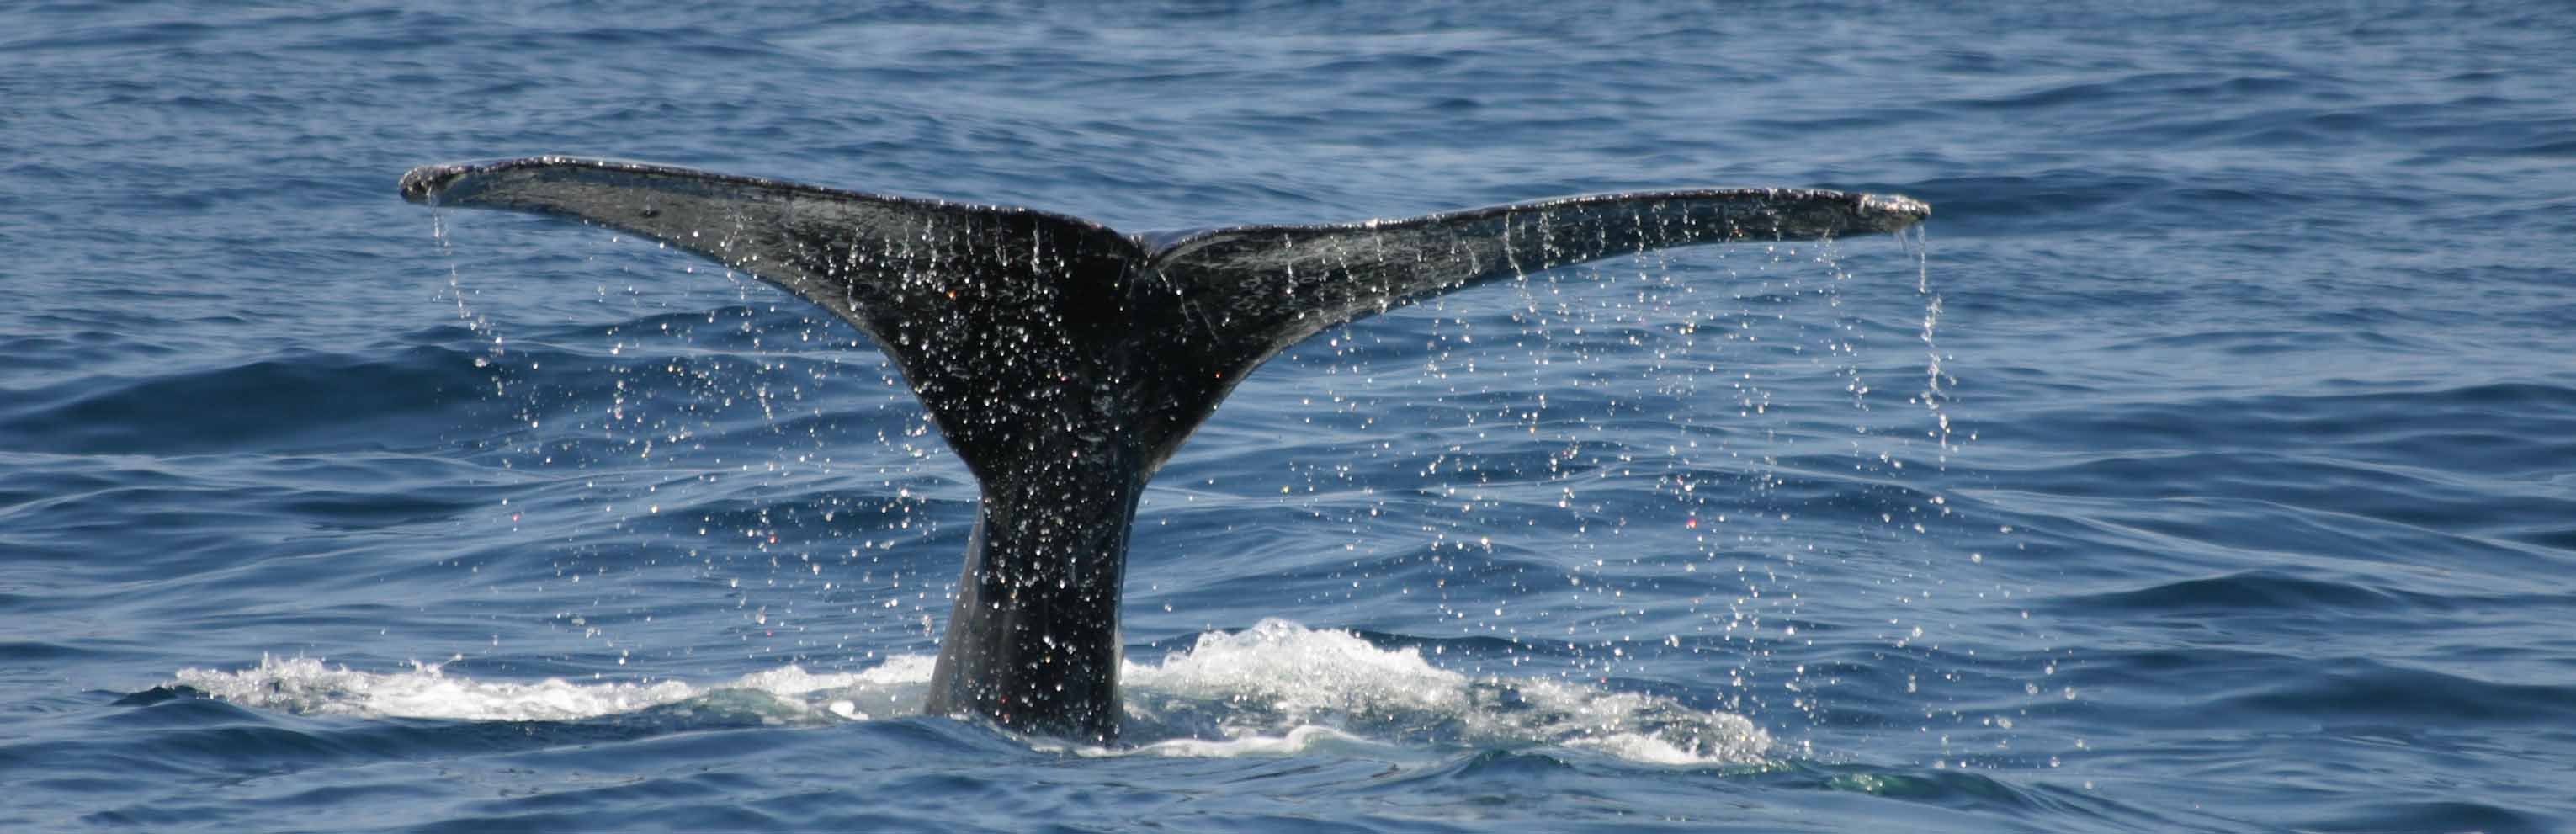 Humpback Whale tail fluke by Dylan Walker